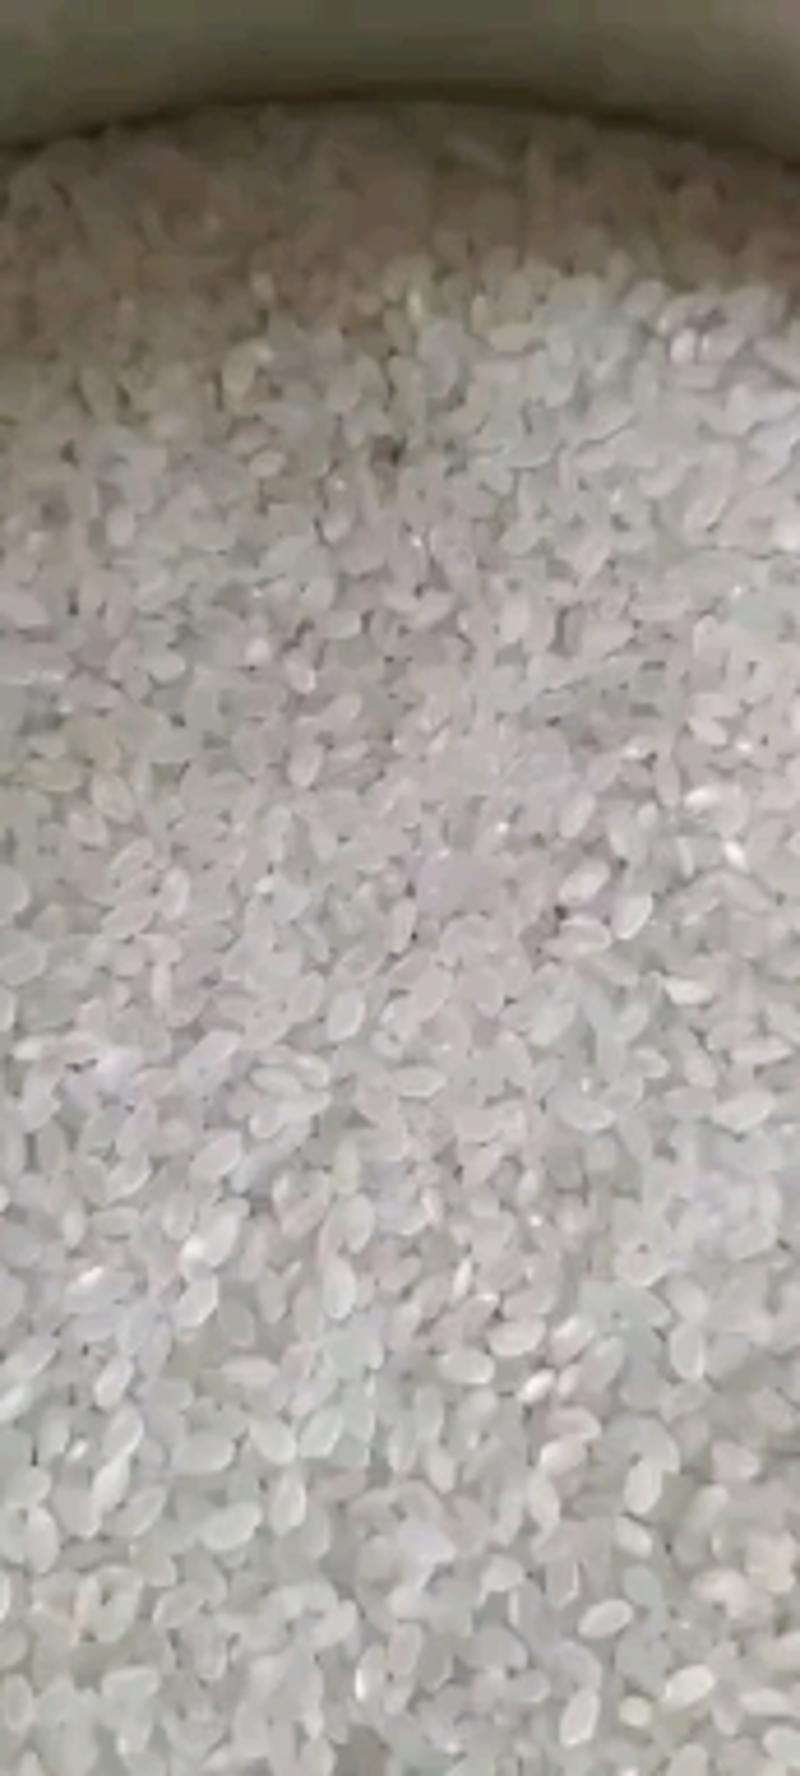 2022年新米稻花香米东北大米5斤10斤精品小包装